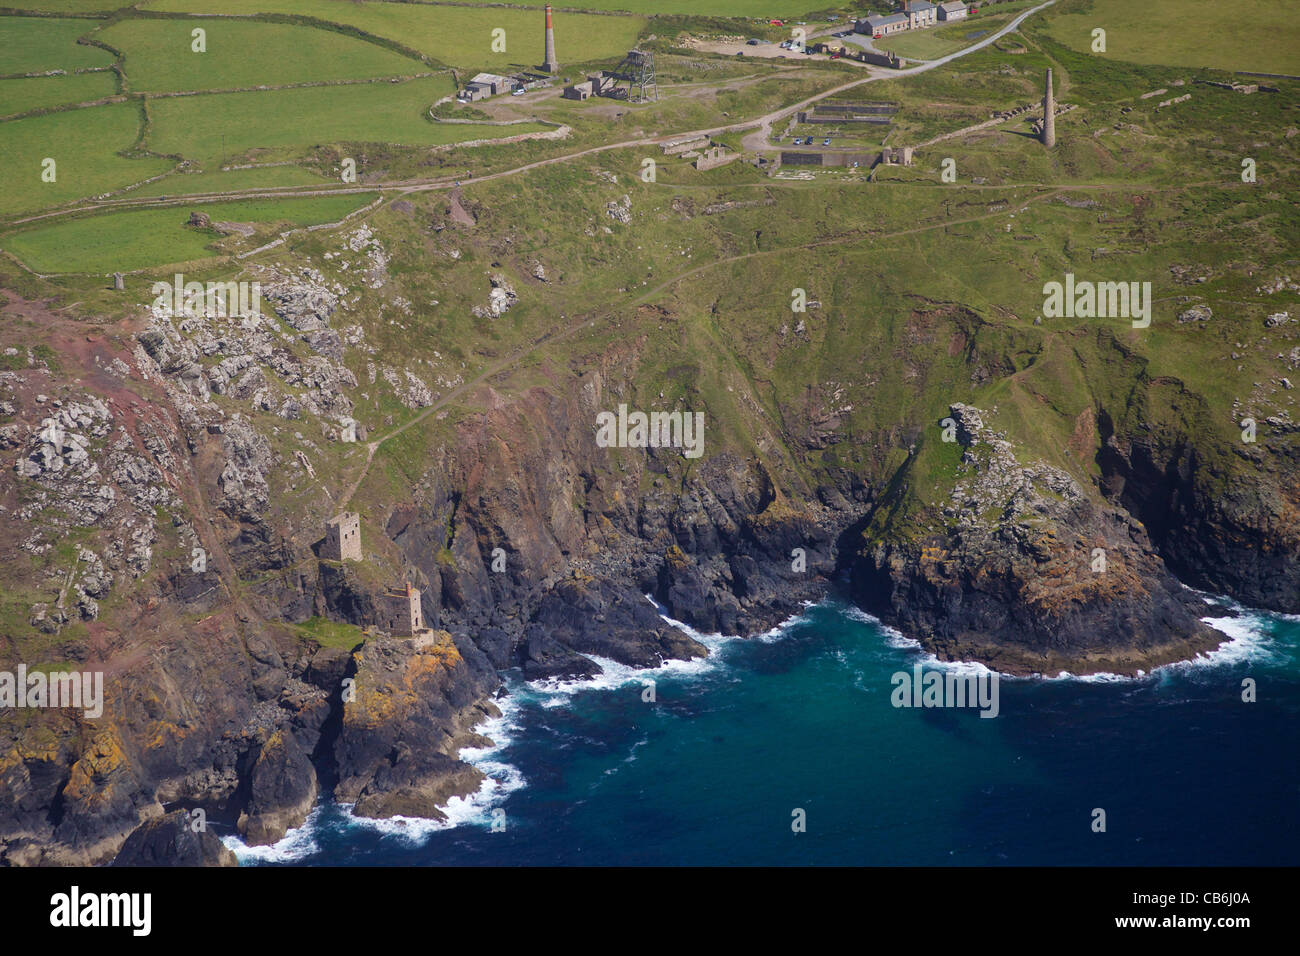 Vista aerea di corone della miniera, Botallack miniera di stagno, Cornwall, Inghilterra, UK, Regno Unito, GB Gran Bretagna, Isole britanniche, Foto Stock